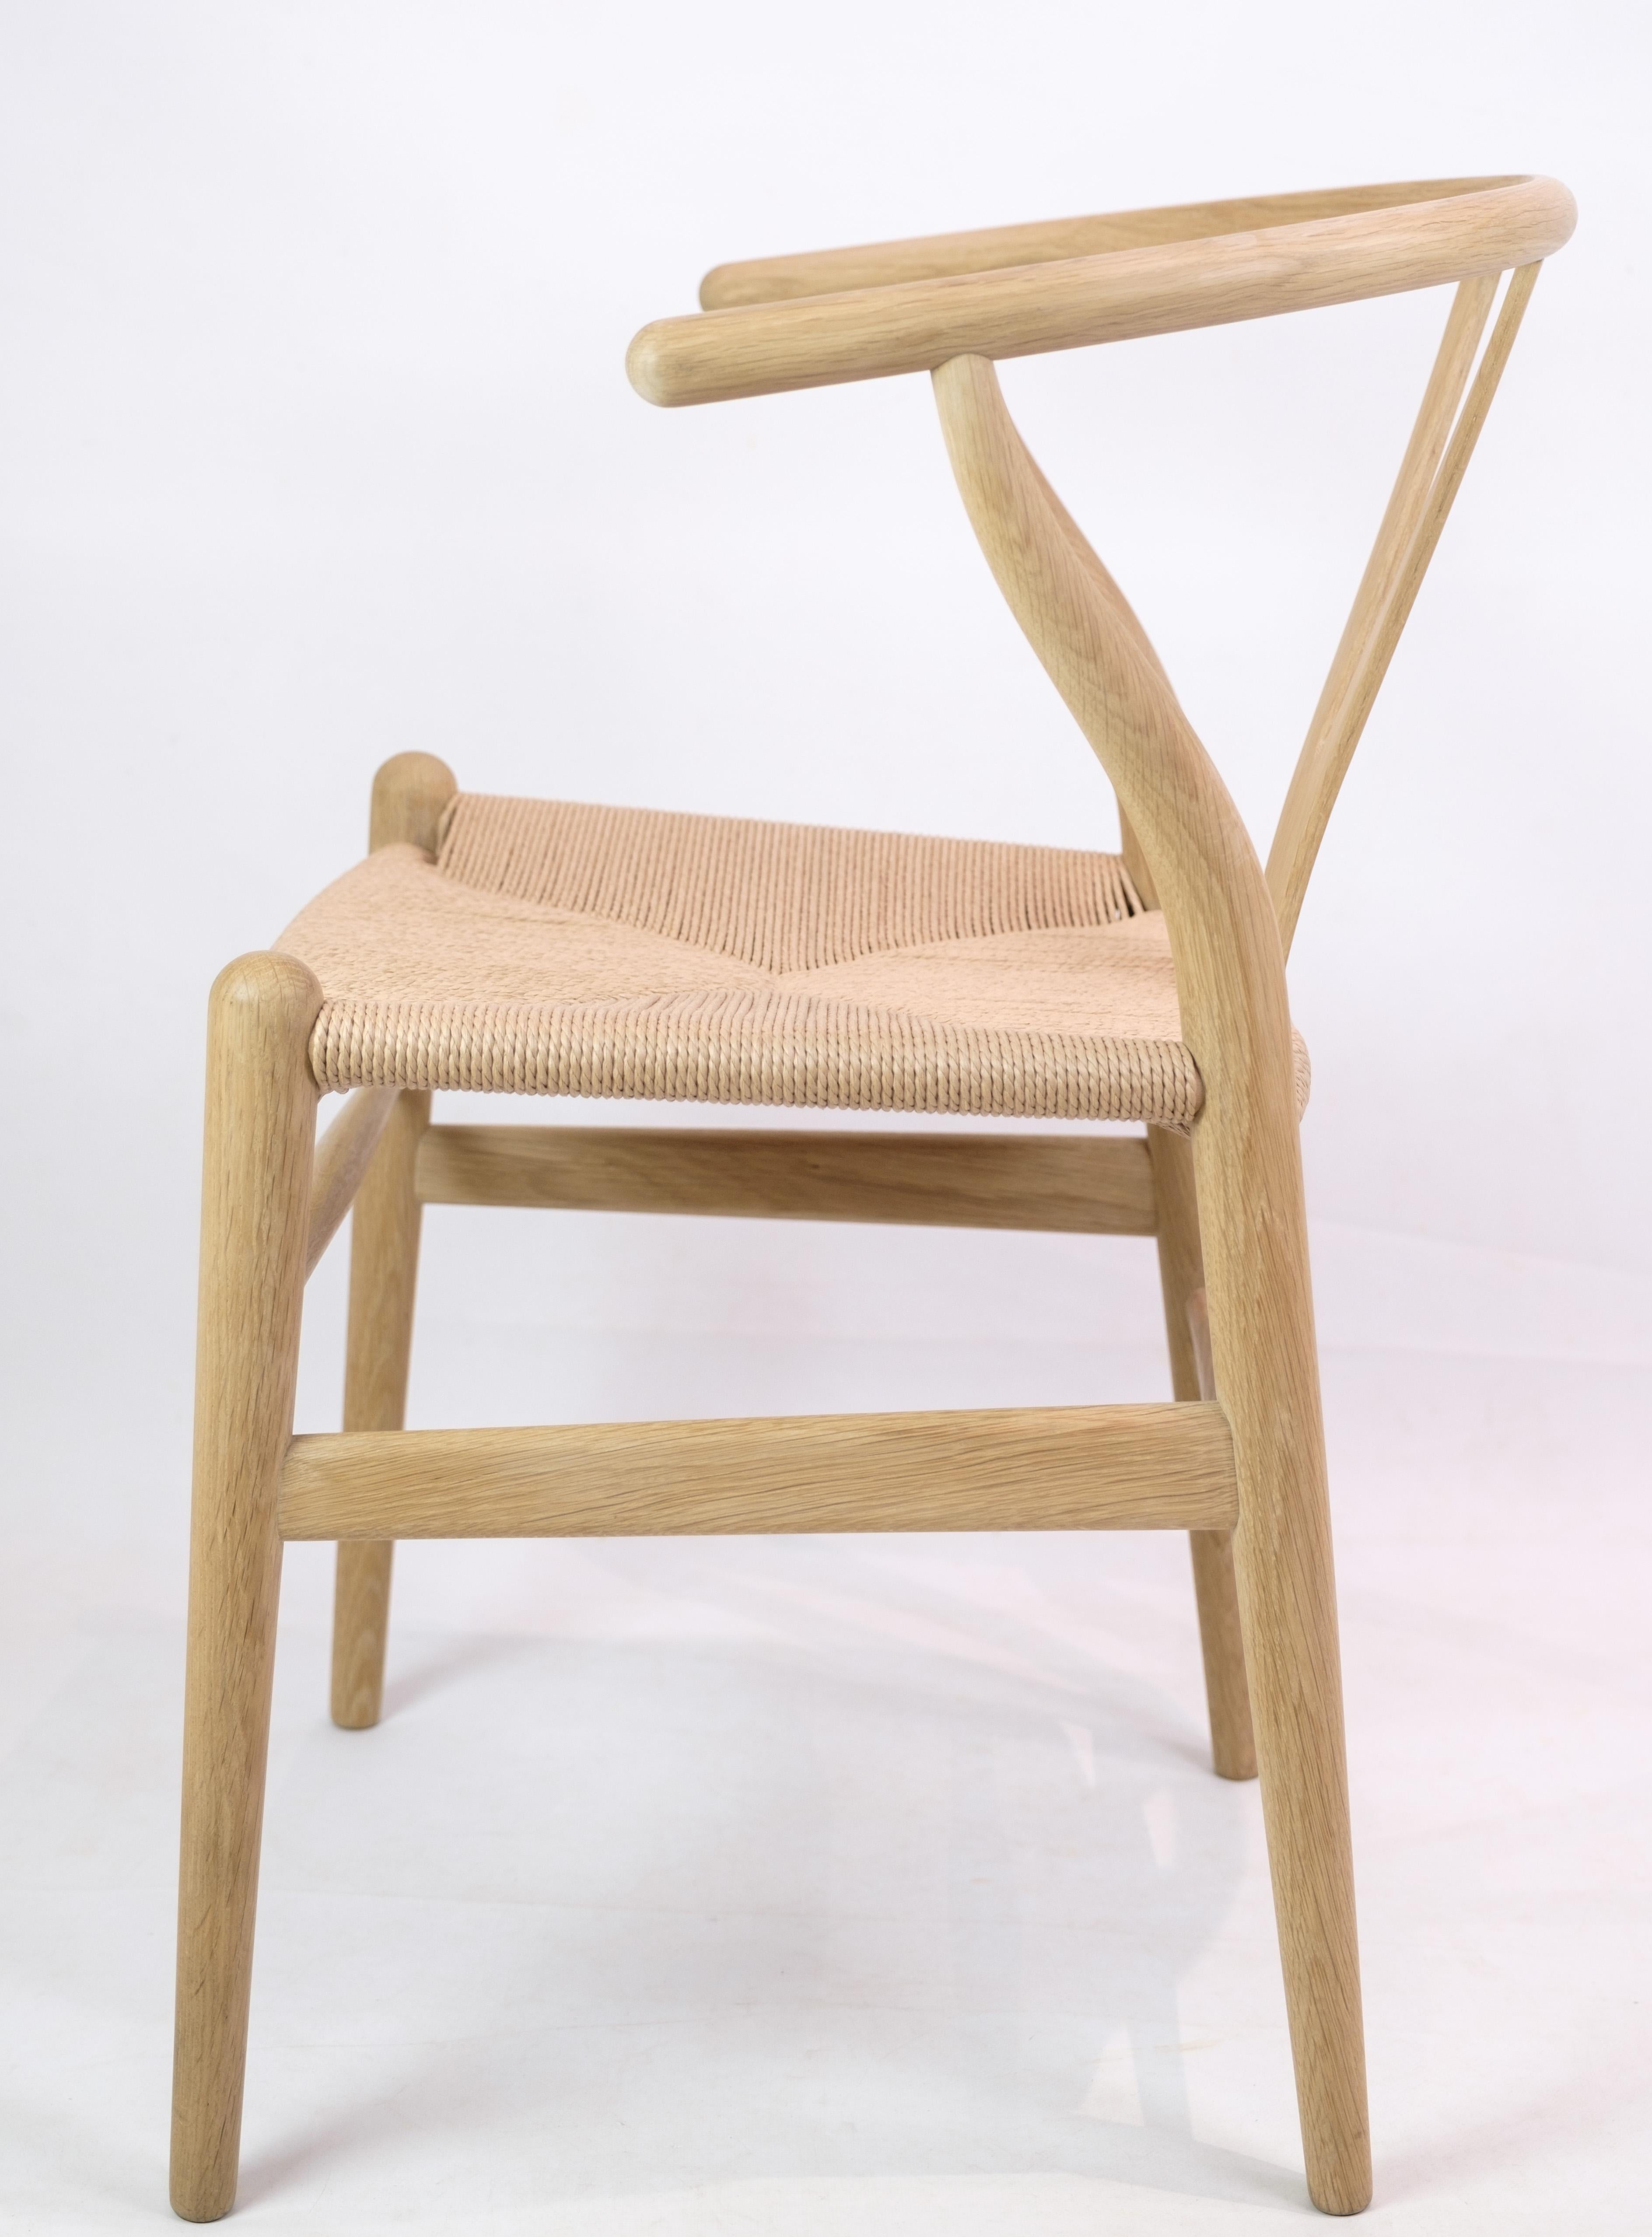 Wicker Y Chair, Model CH24, Hans J. Wegner in Oak, 1950 For Sale